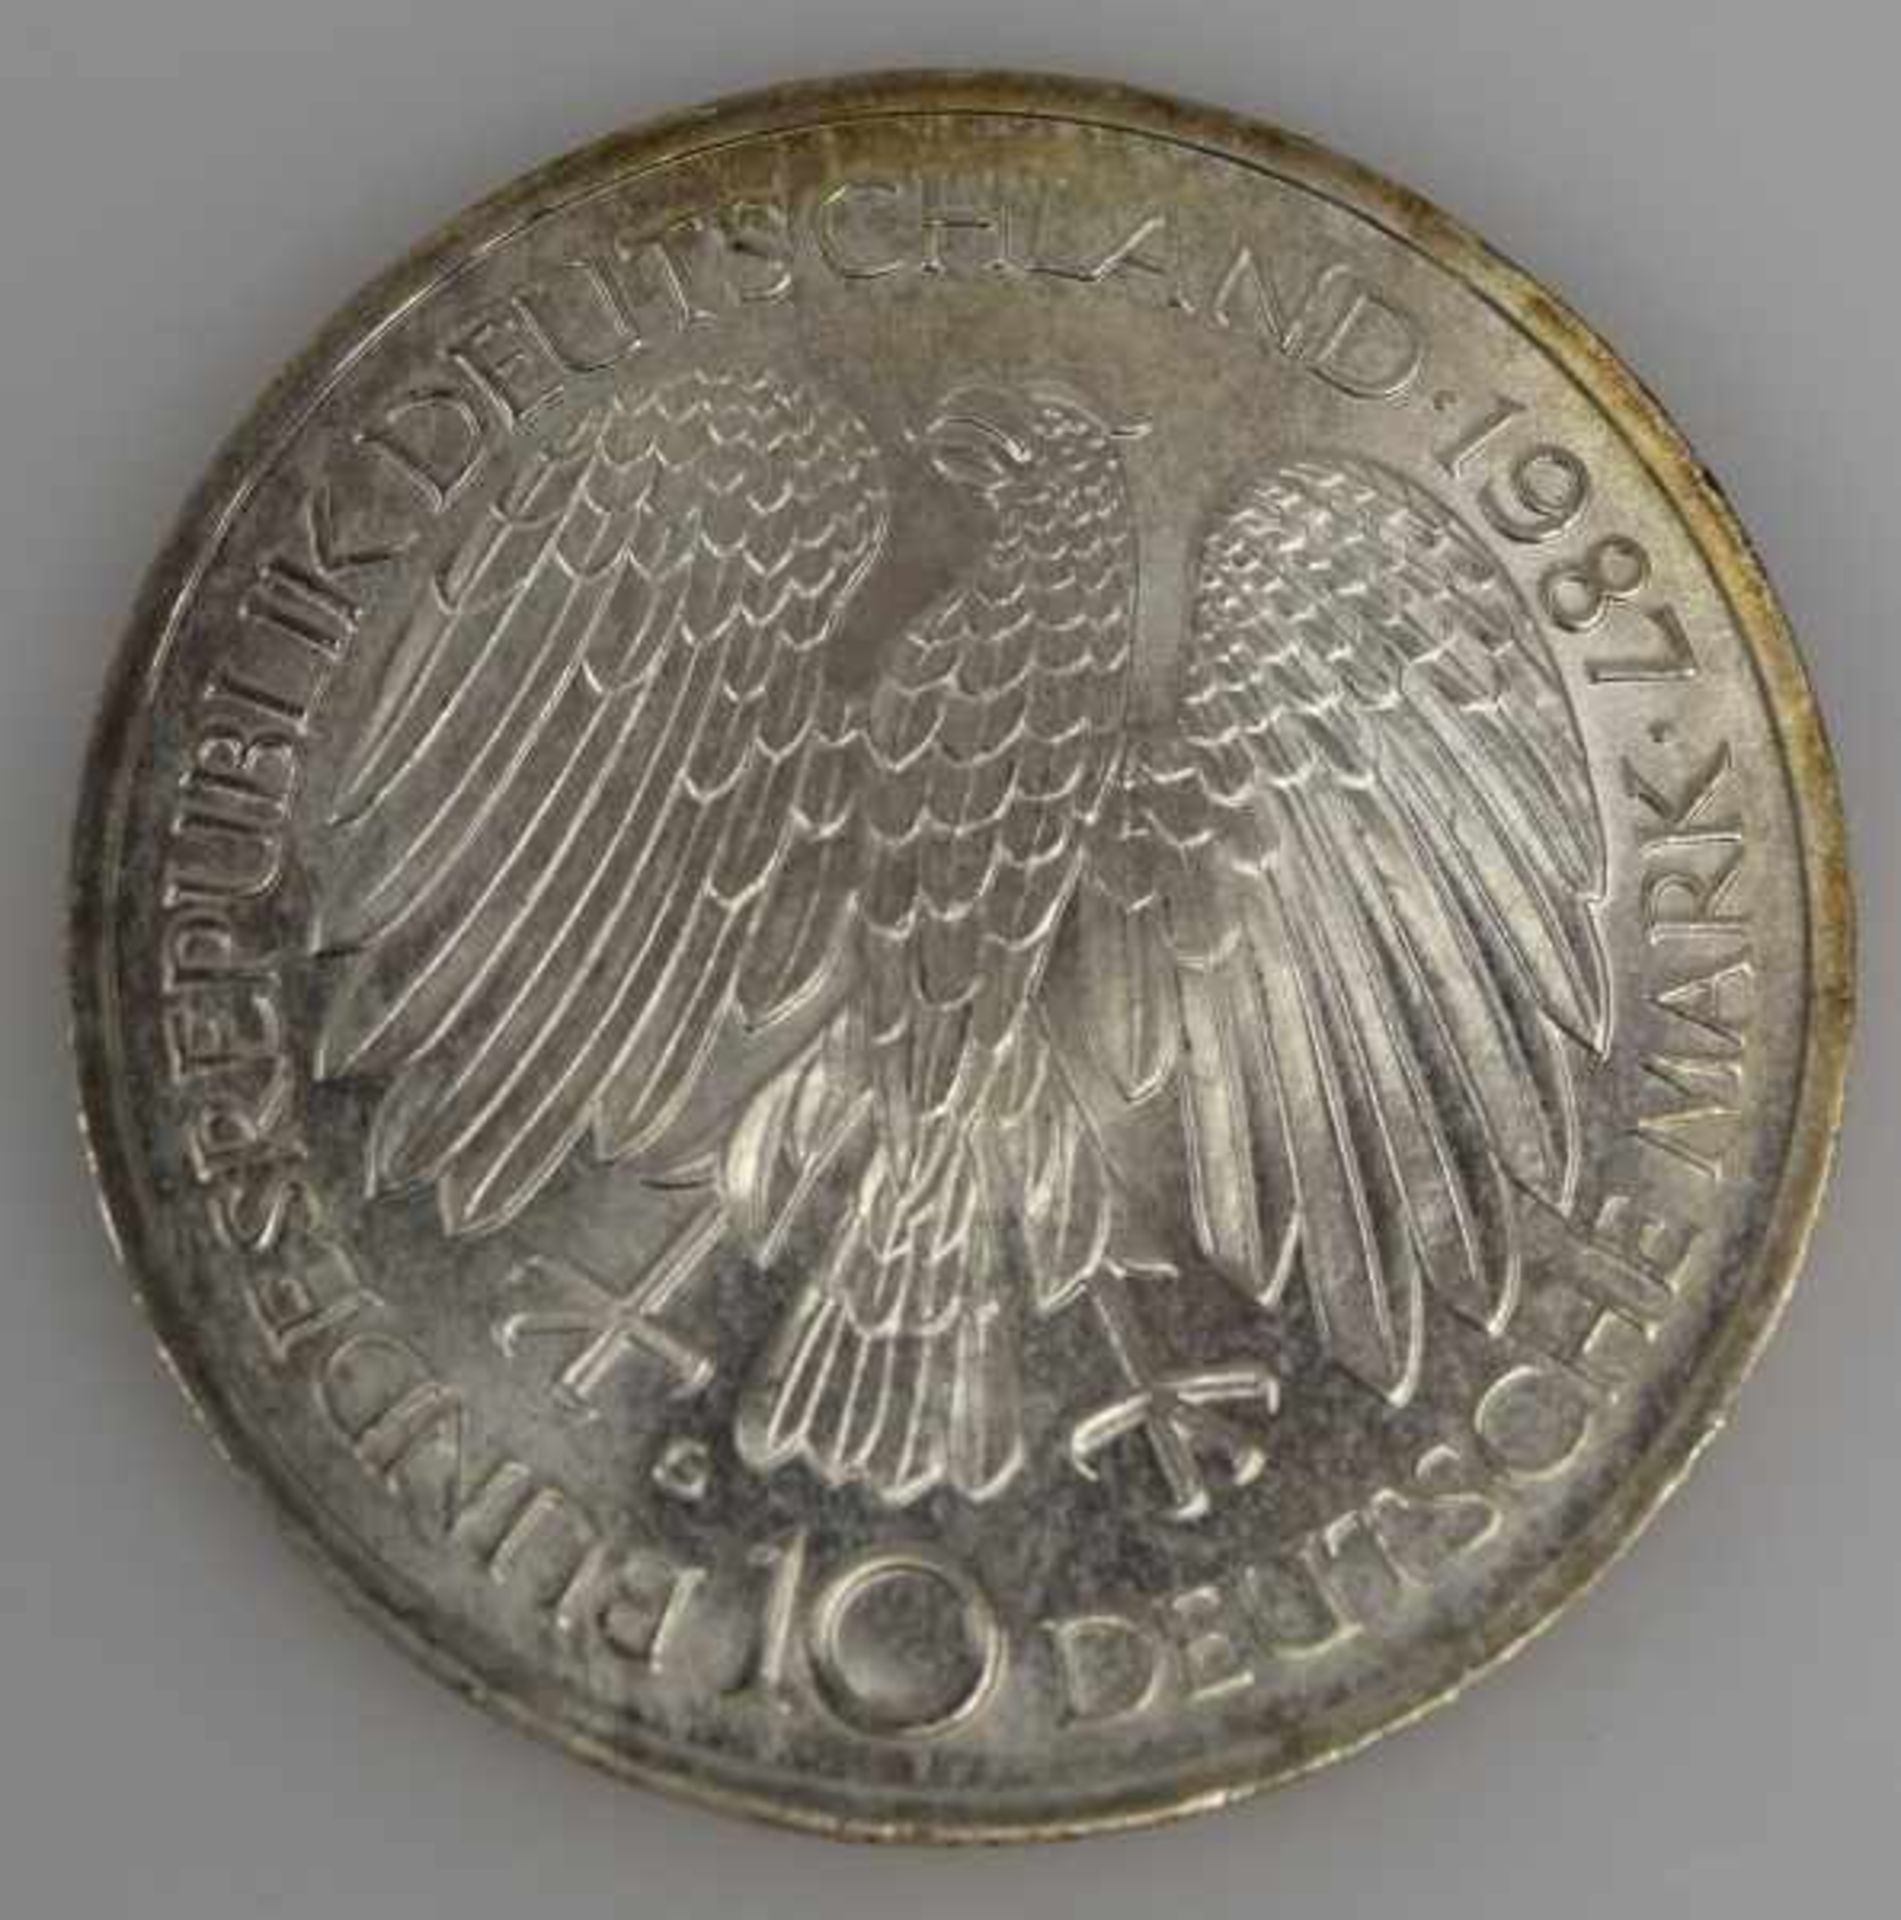 MÜNZEN-LOT 1 Münzanhänger mit Münze 10Fr. Schweiz Nachprägung in Fassung 14ct, 8,3g -1 Goldmünze 200 - Bild 8 aus 17